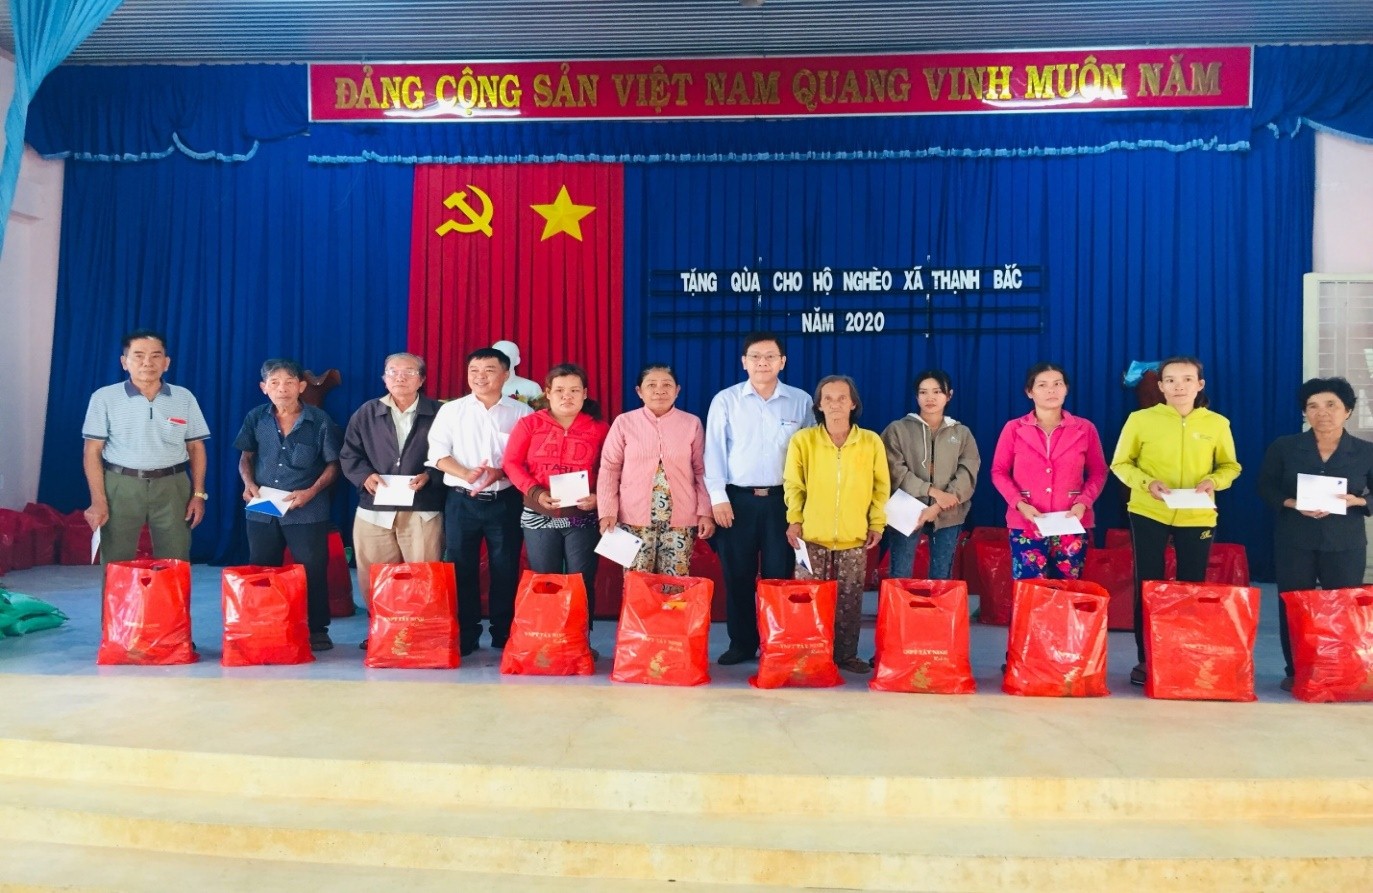 Đại biểu Hội đồng nhân dân Tỉnh tặng quà tết cho hộ nghèo, gia dình chính sách xã Thạnh Bắc nhân dịp tết Nguyên đán Canh Tý năm 2020